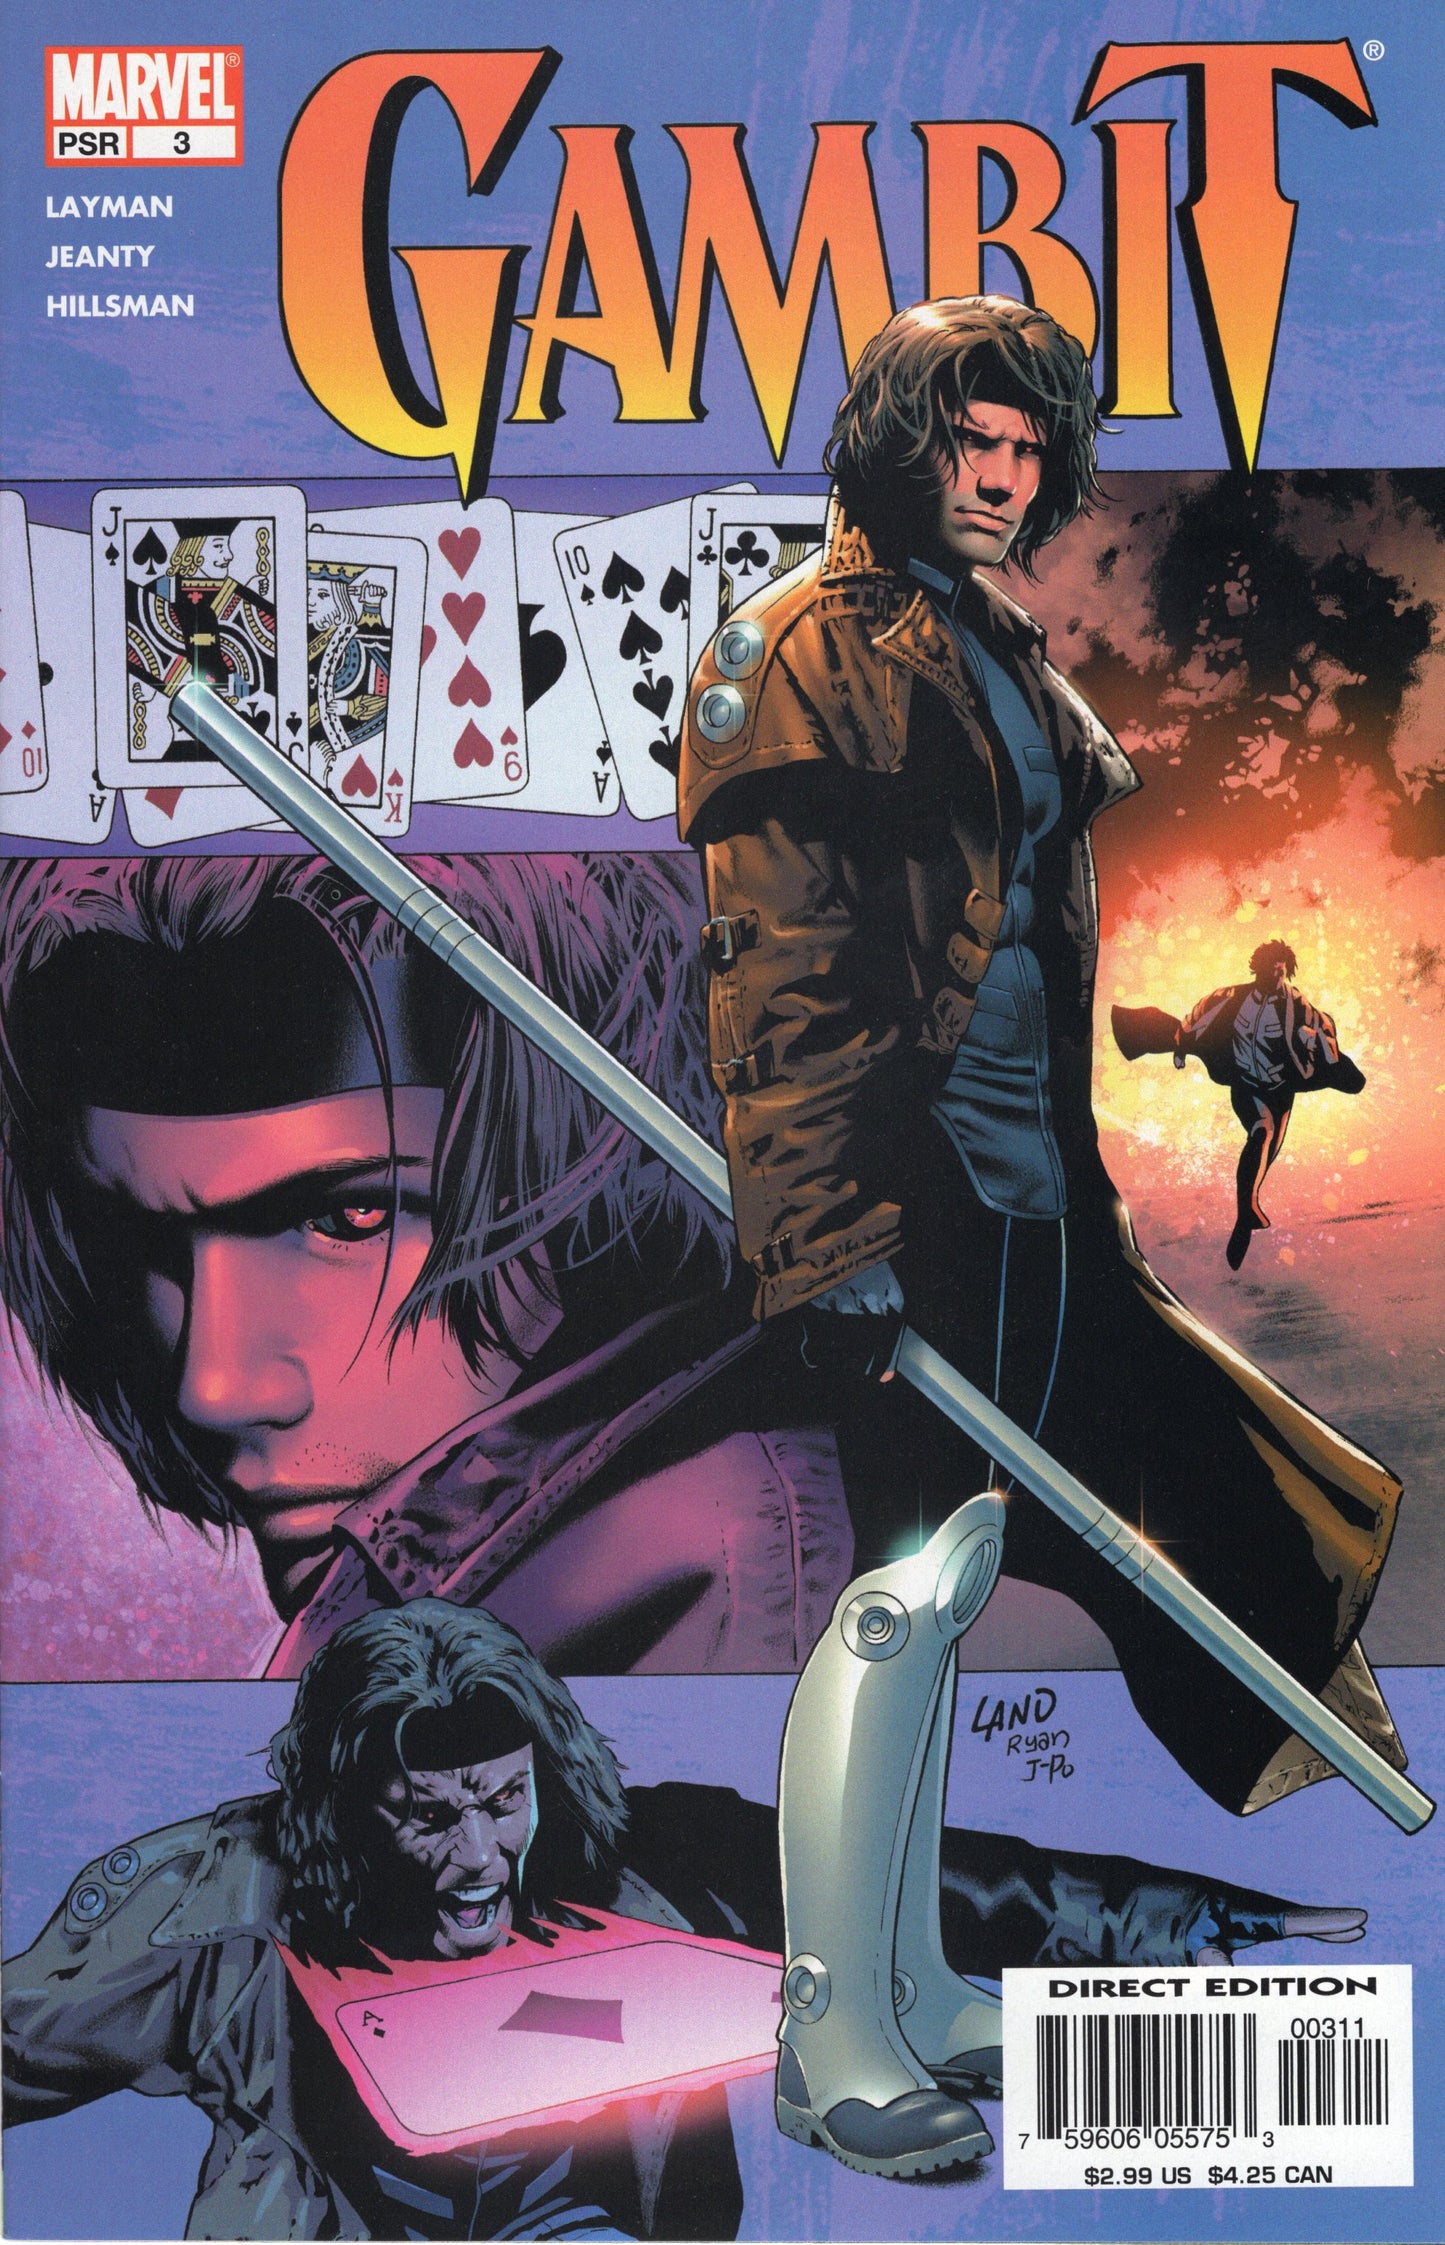 Gambit Issue #3 (Dec. 2004, Marvel Comics) VF/NM